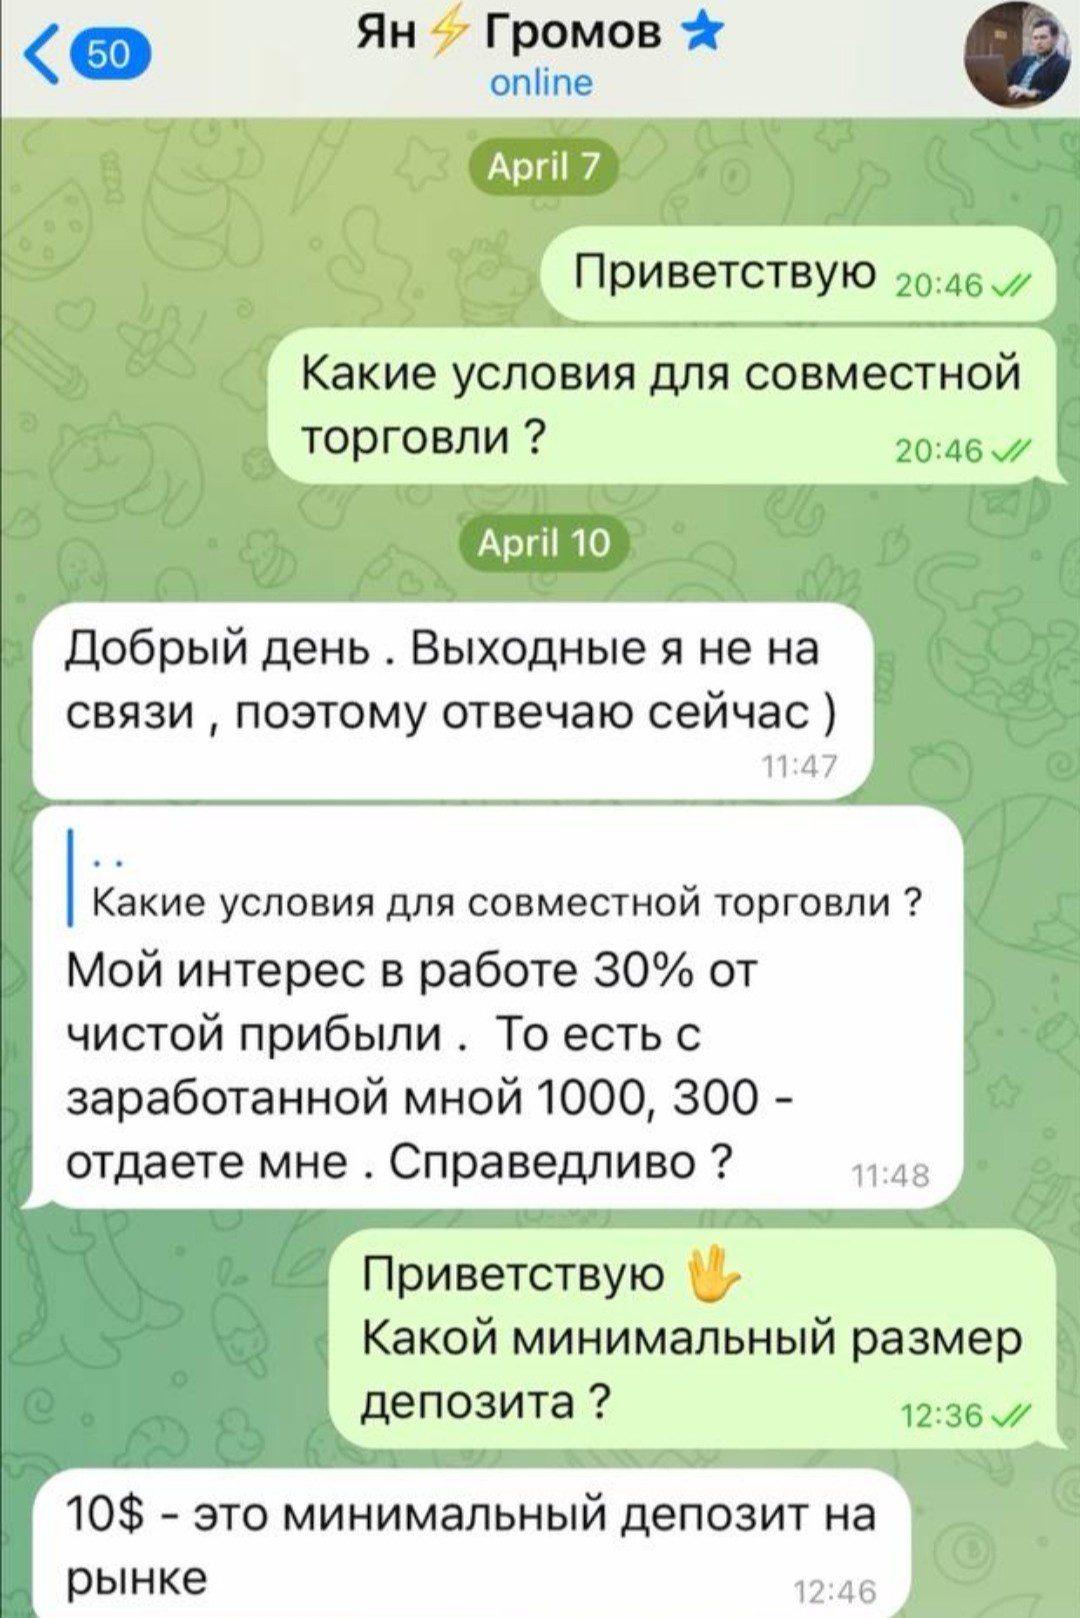 Ян Громов телеграм